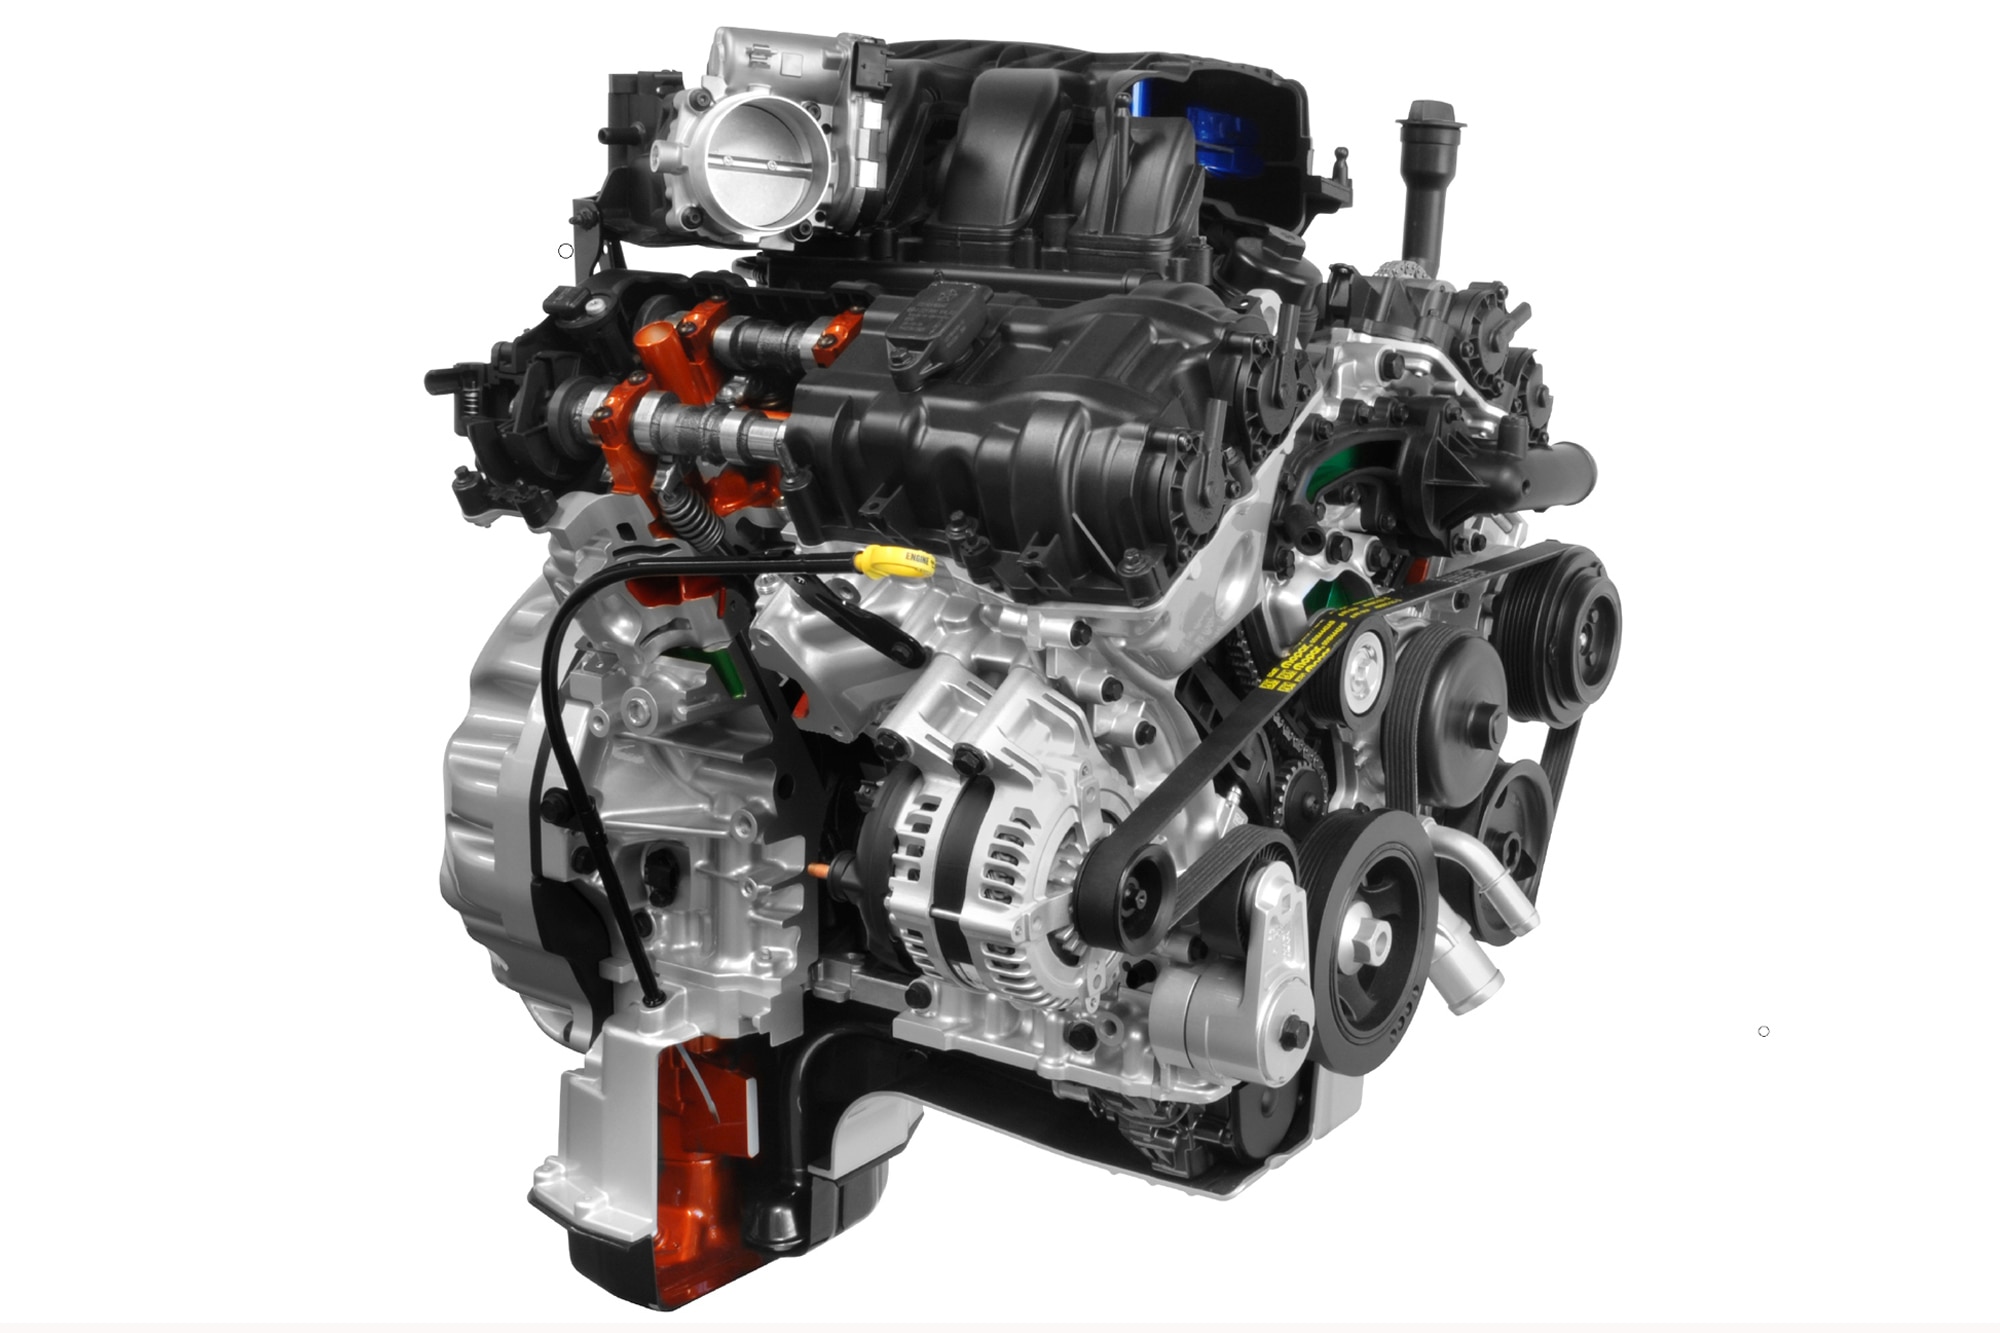 A Pentastar 3.6-liter V6 engine